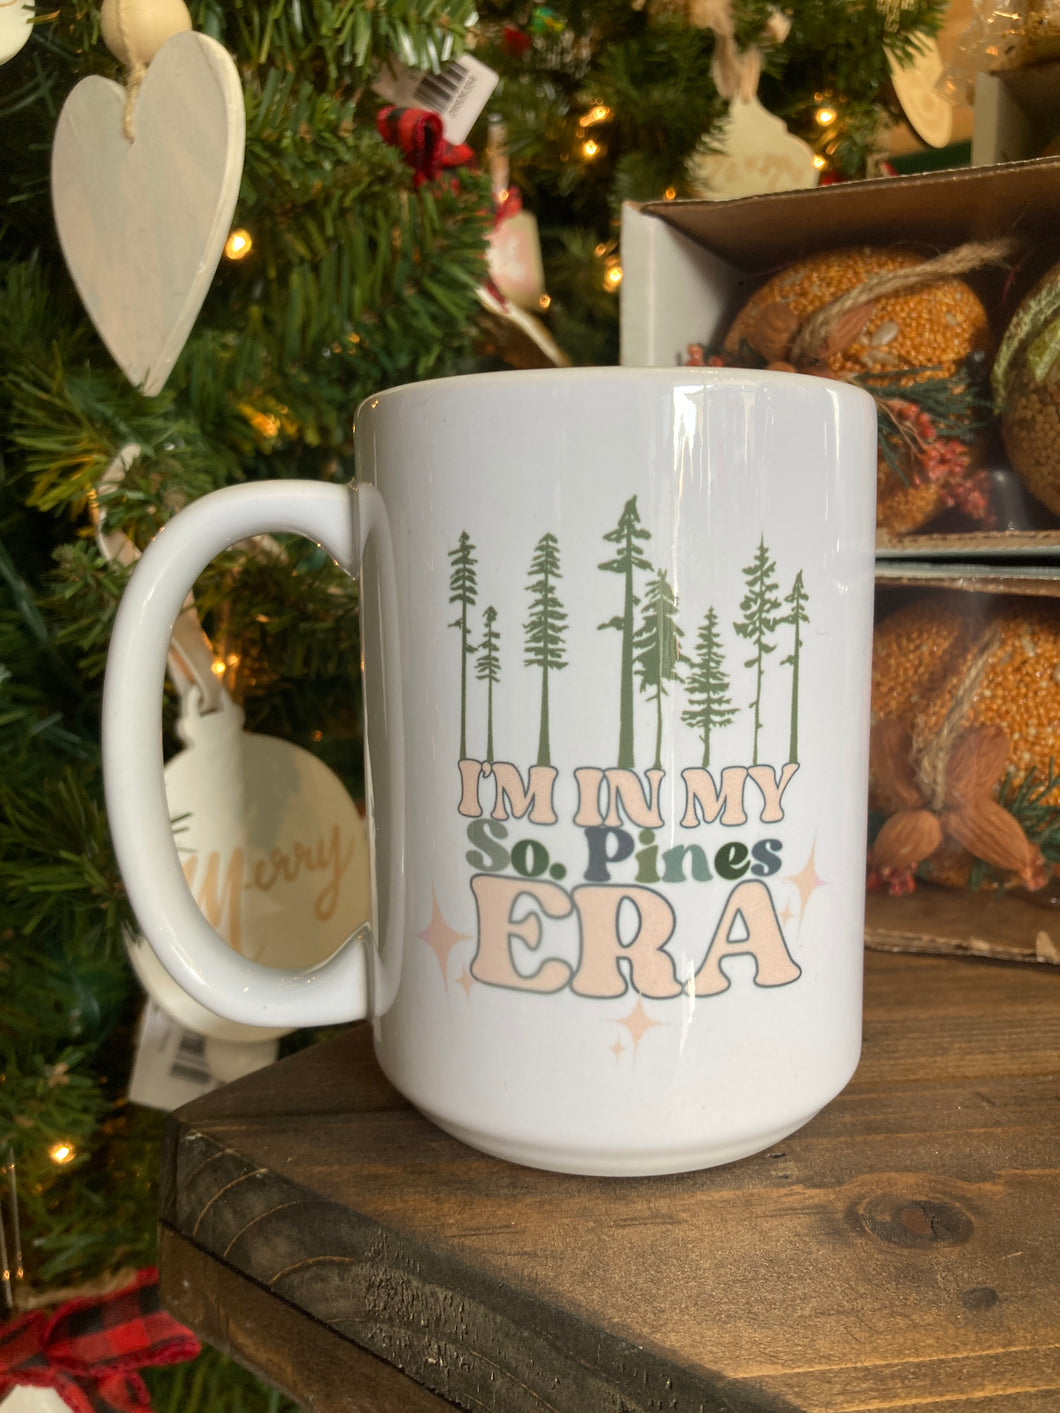 So Pines Era Mug